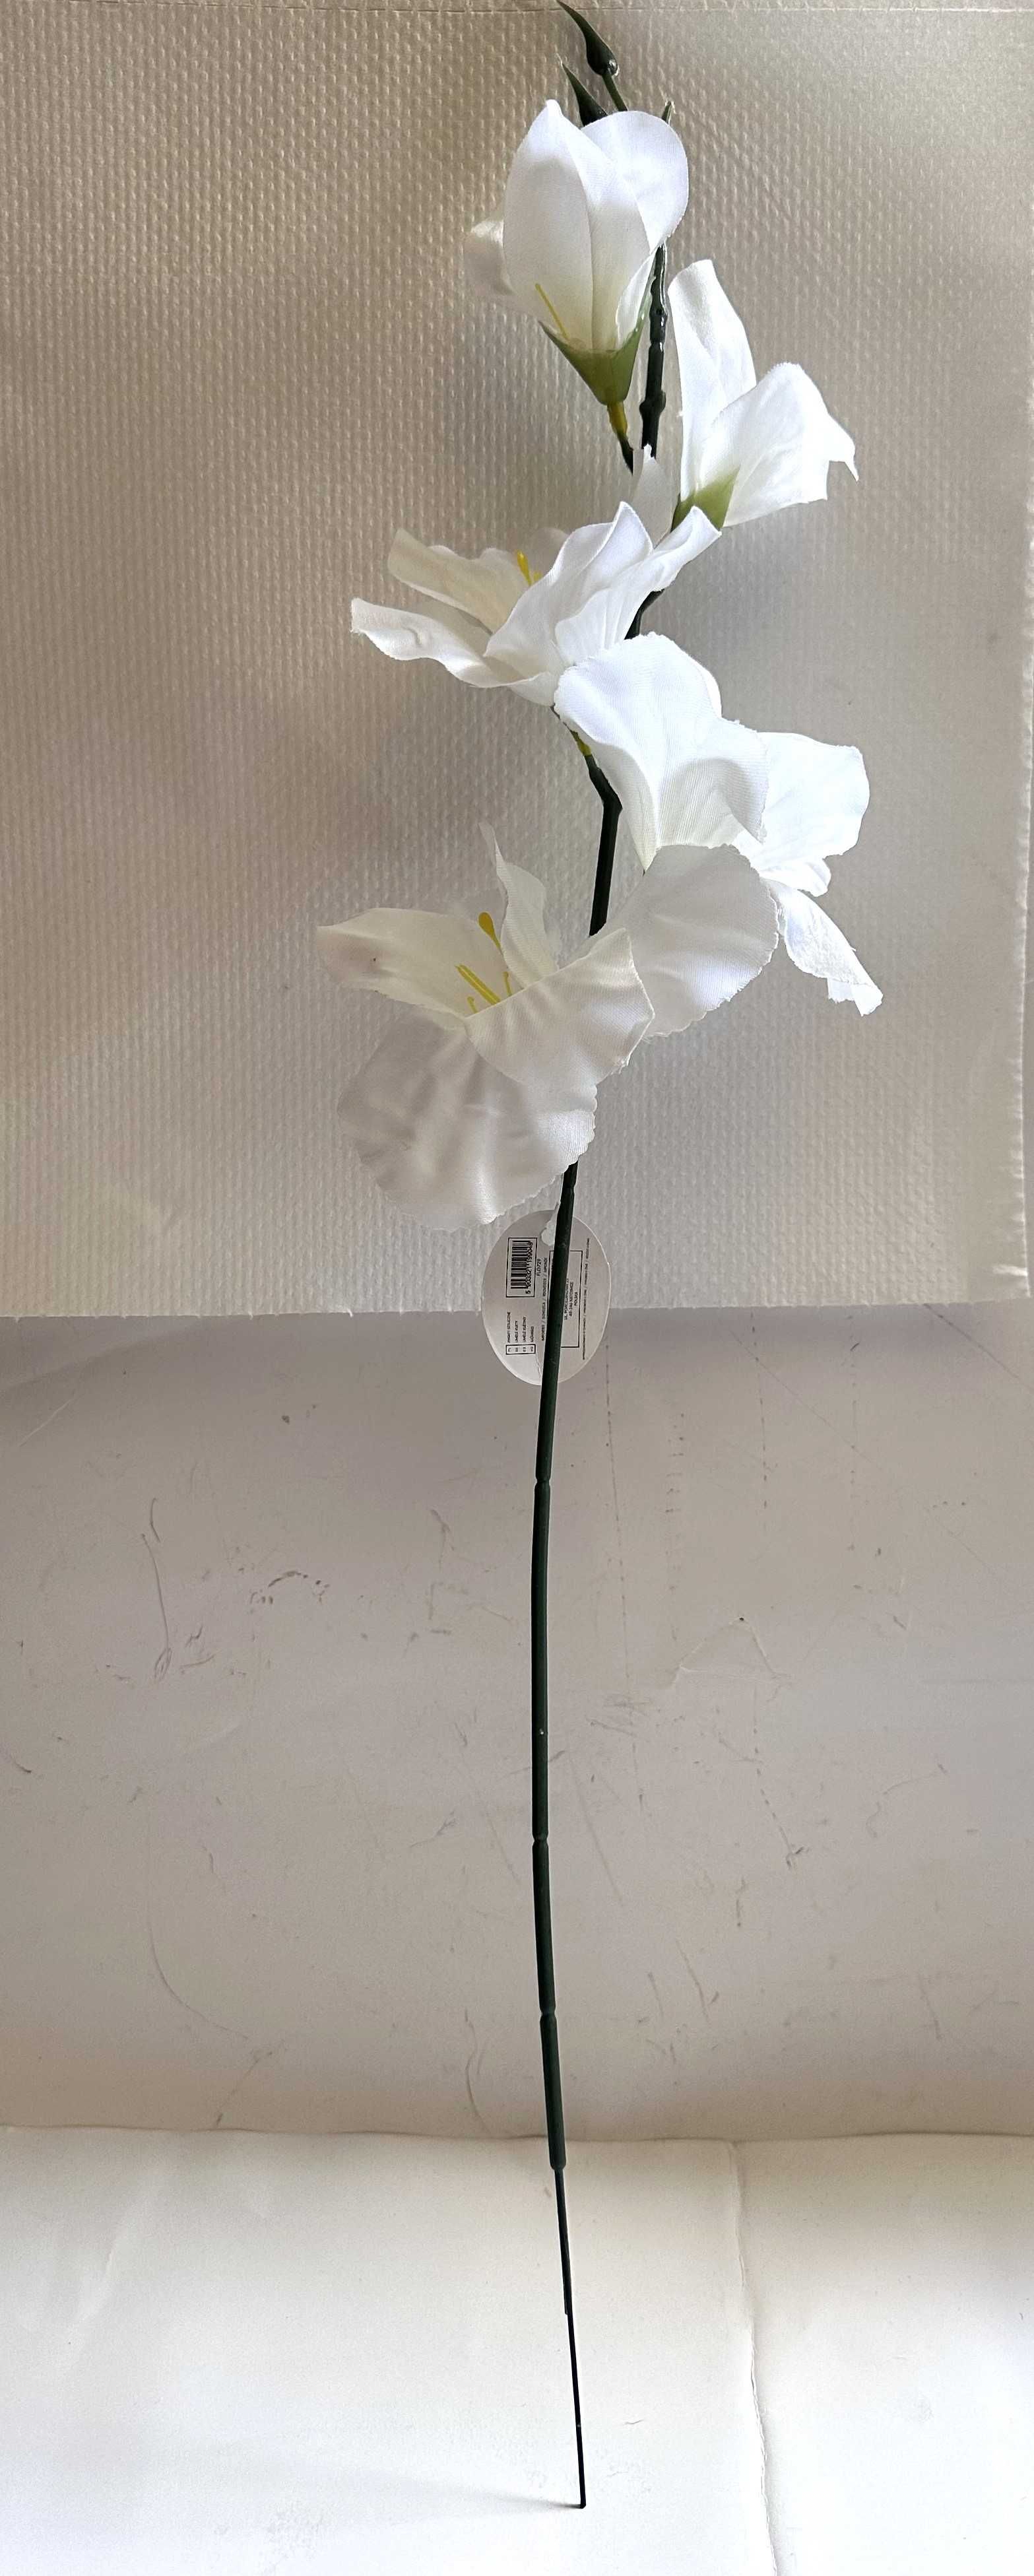 2sztuki Kwiat sztuczny mieczyk  dł. cał. ok 54cm